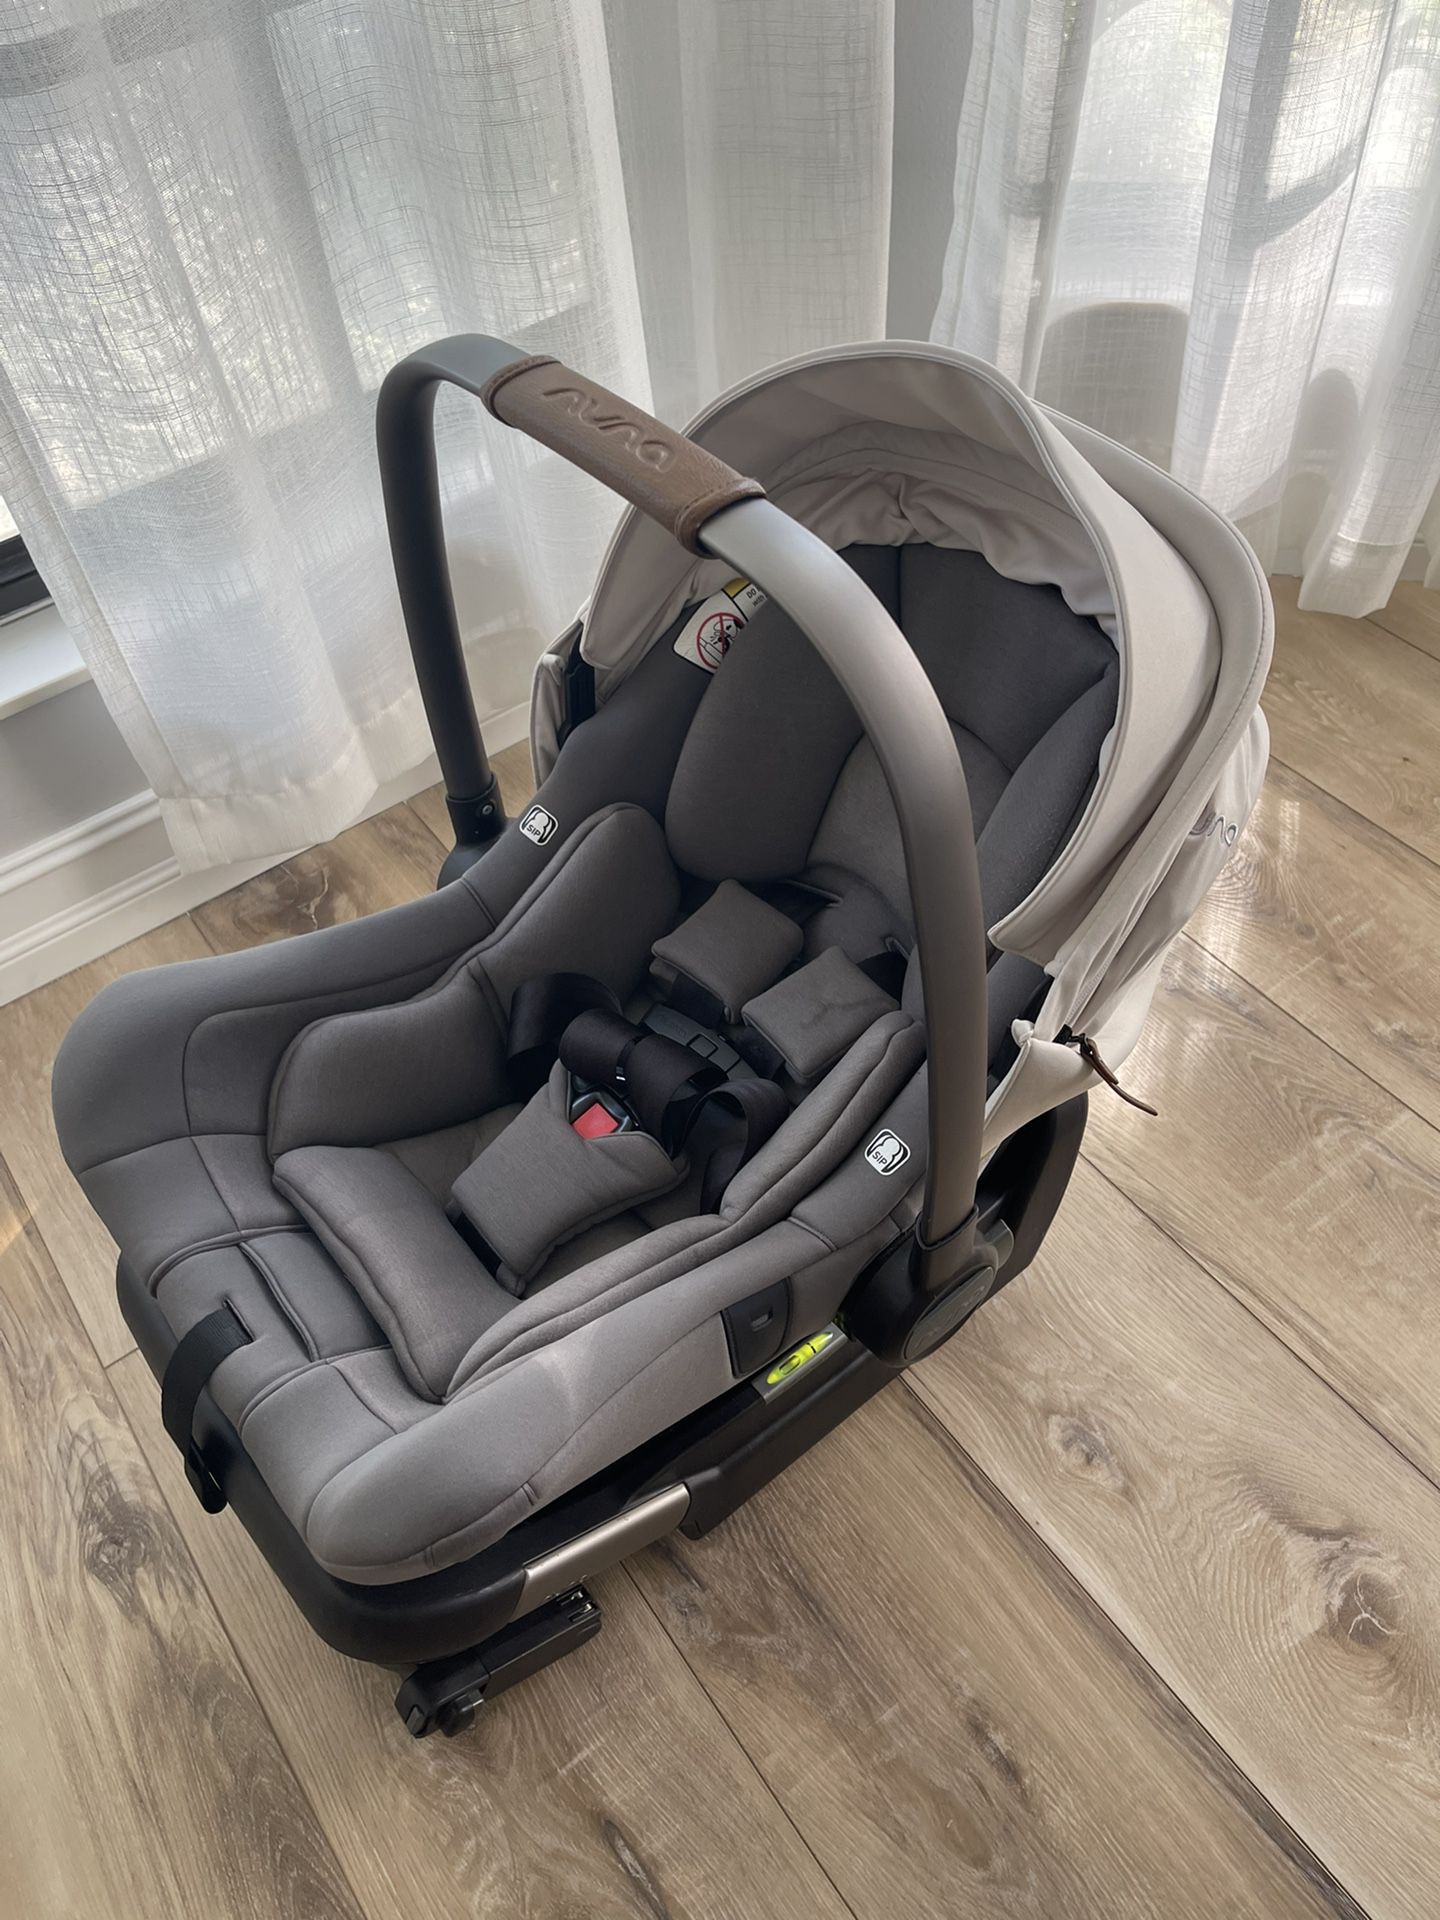 Nuna Pipa Lite Lx Infant Car seat In Birch